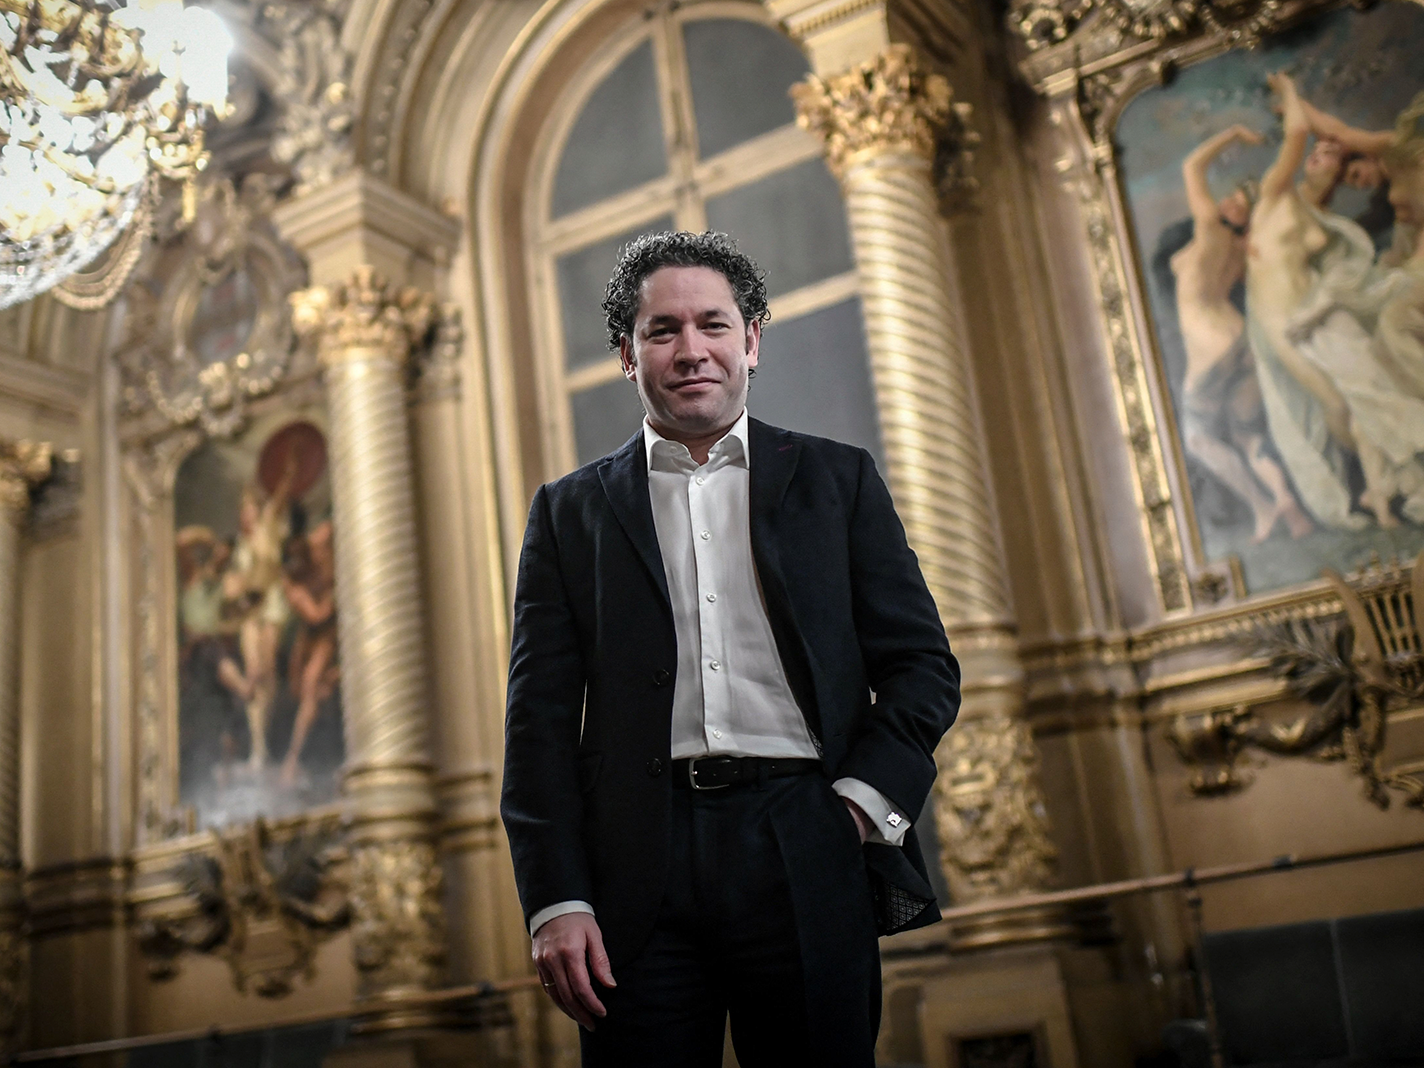 Gustavo Dudamel: Venezuelan star conductor Gustavo Dudamel to